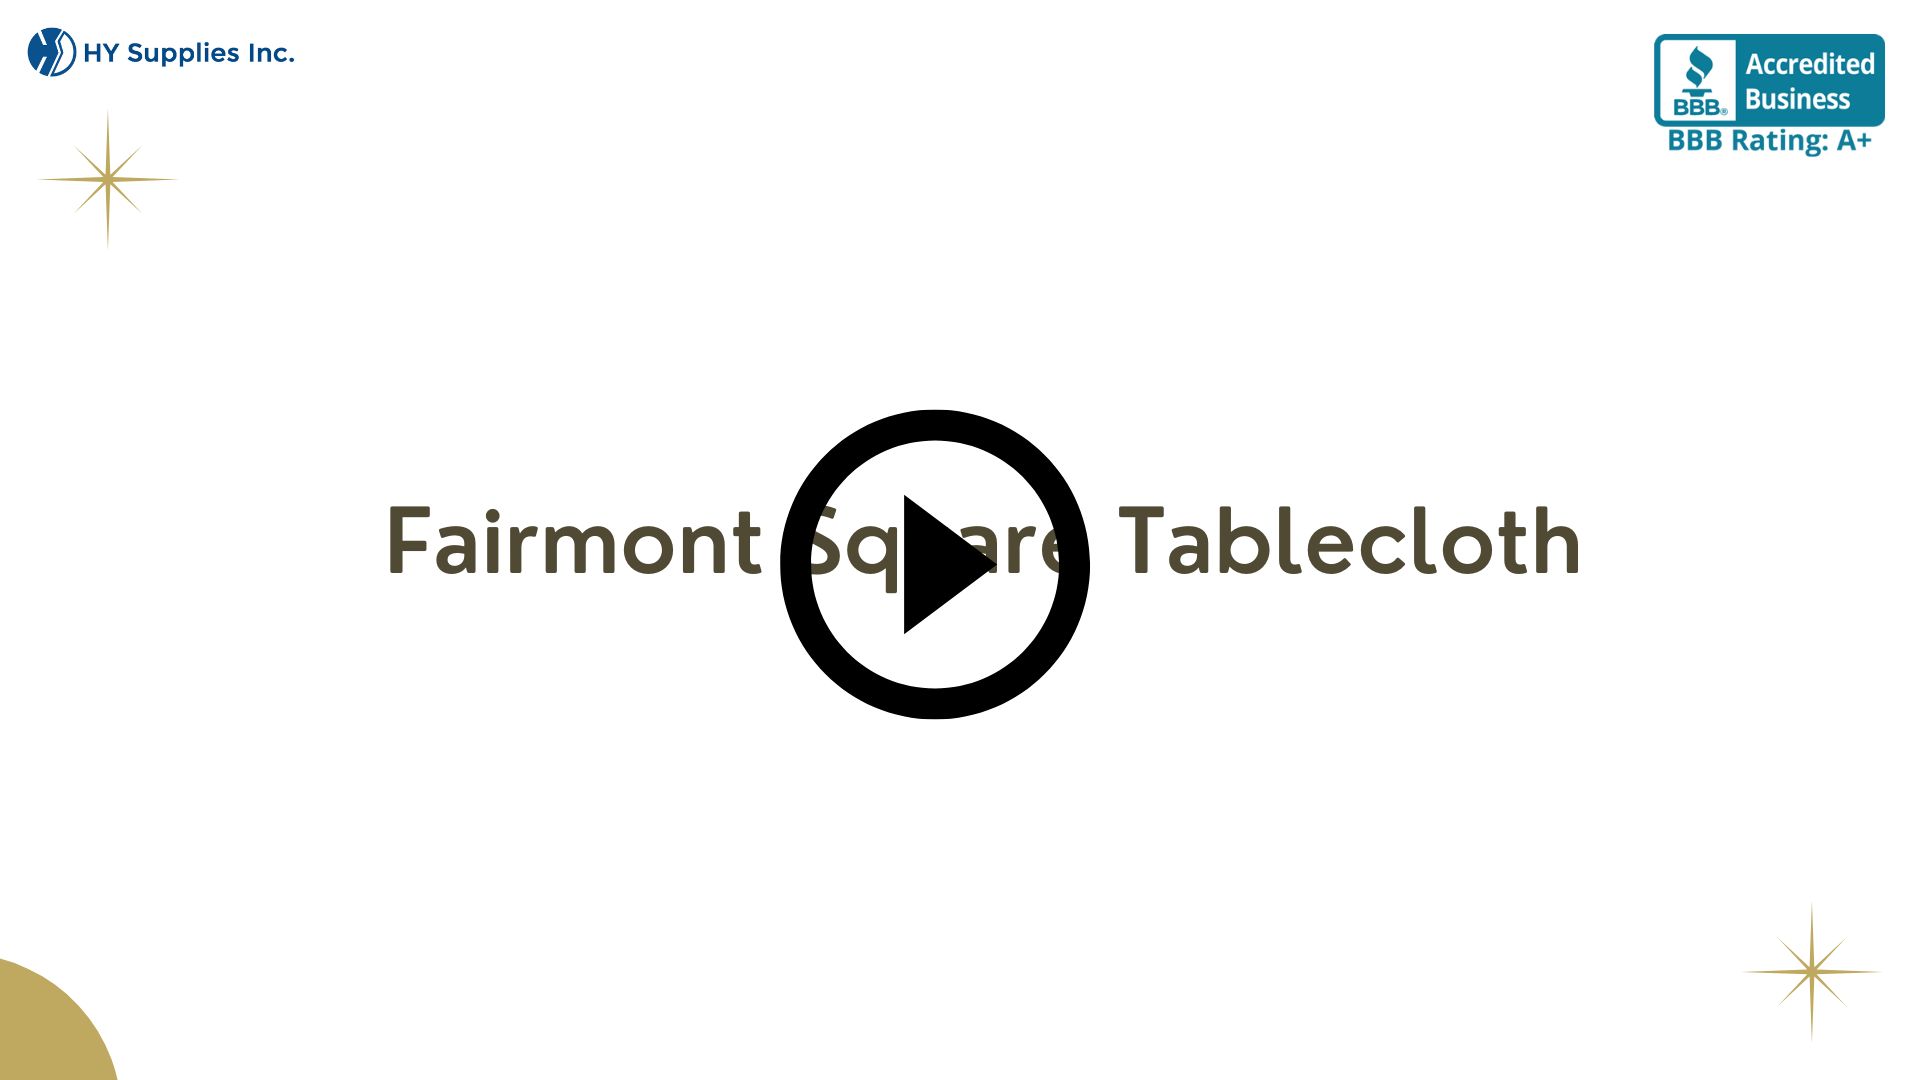 Fairmont Square Tablecloth